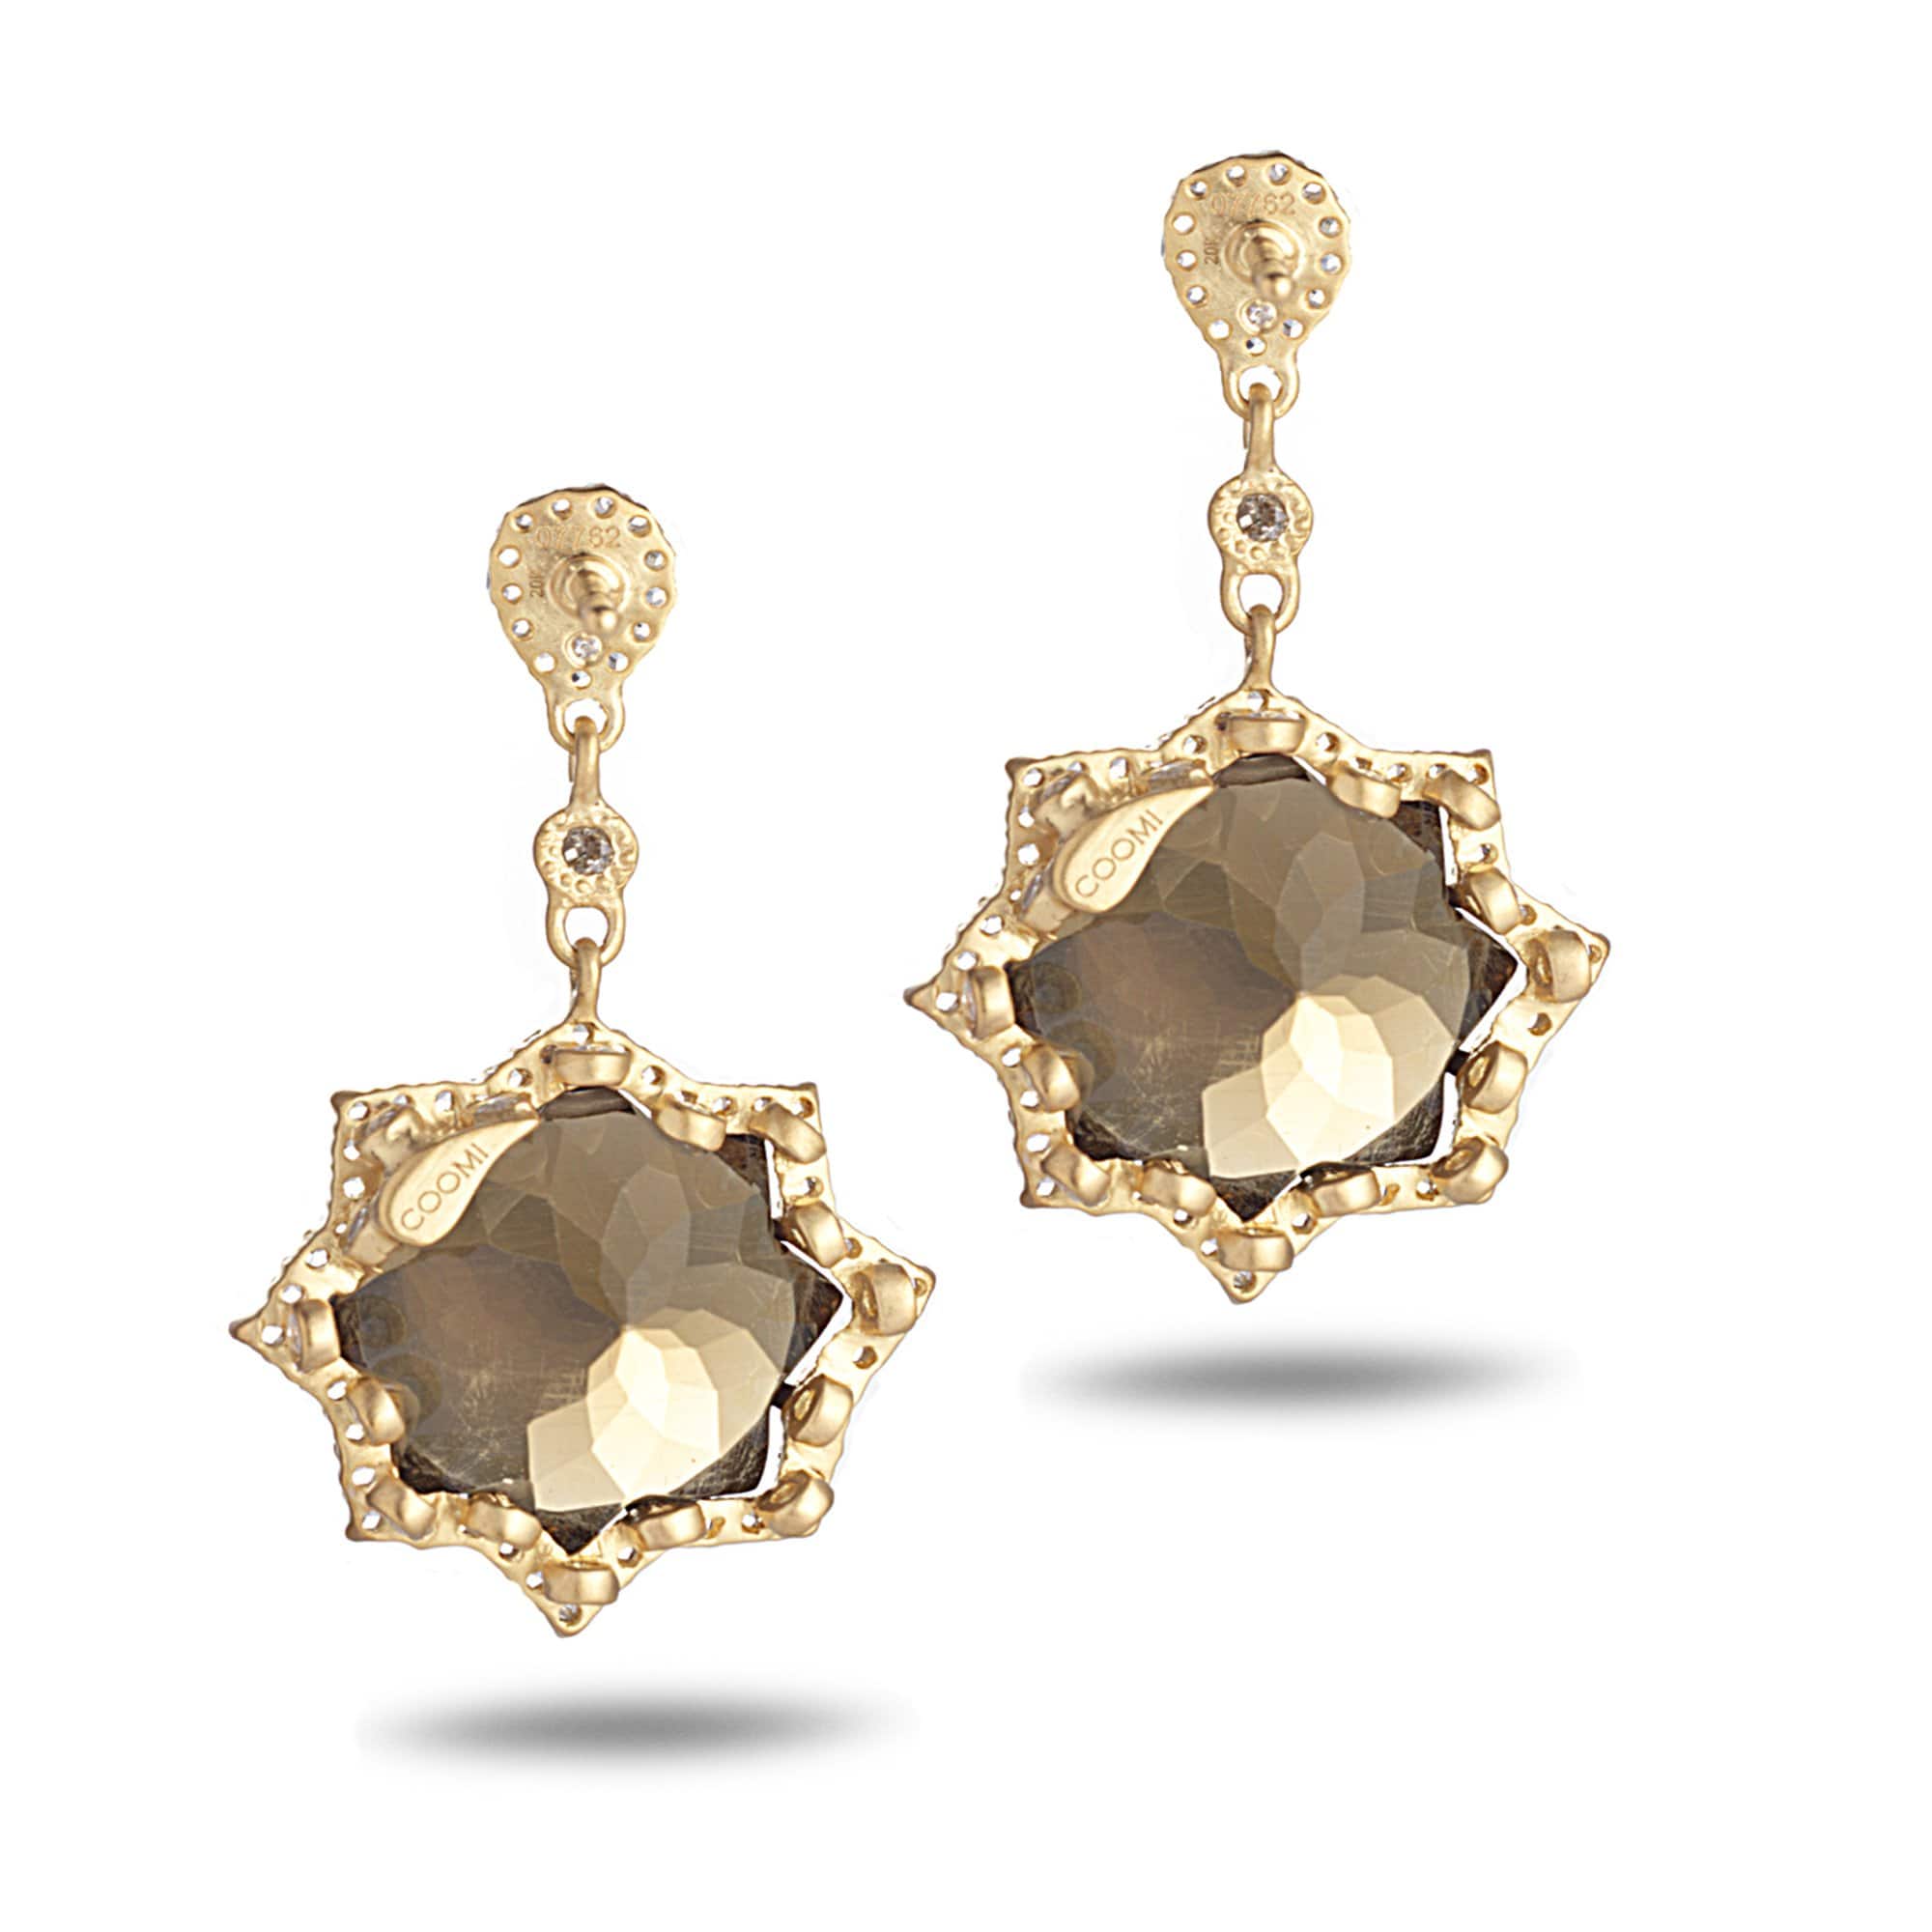 Sagrada Kaleidoscope Earrings in 20K with Cognac Quartz and Diamonds - Coomi